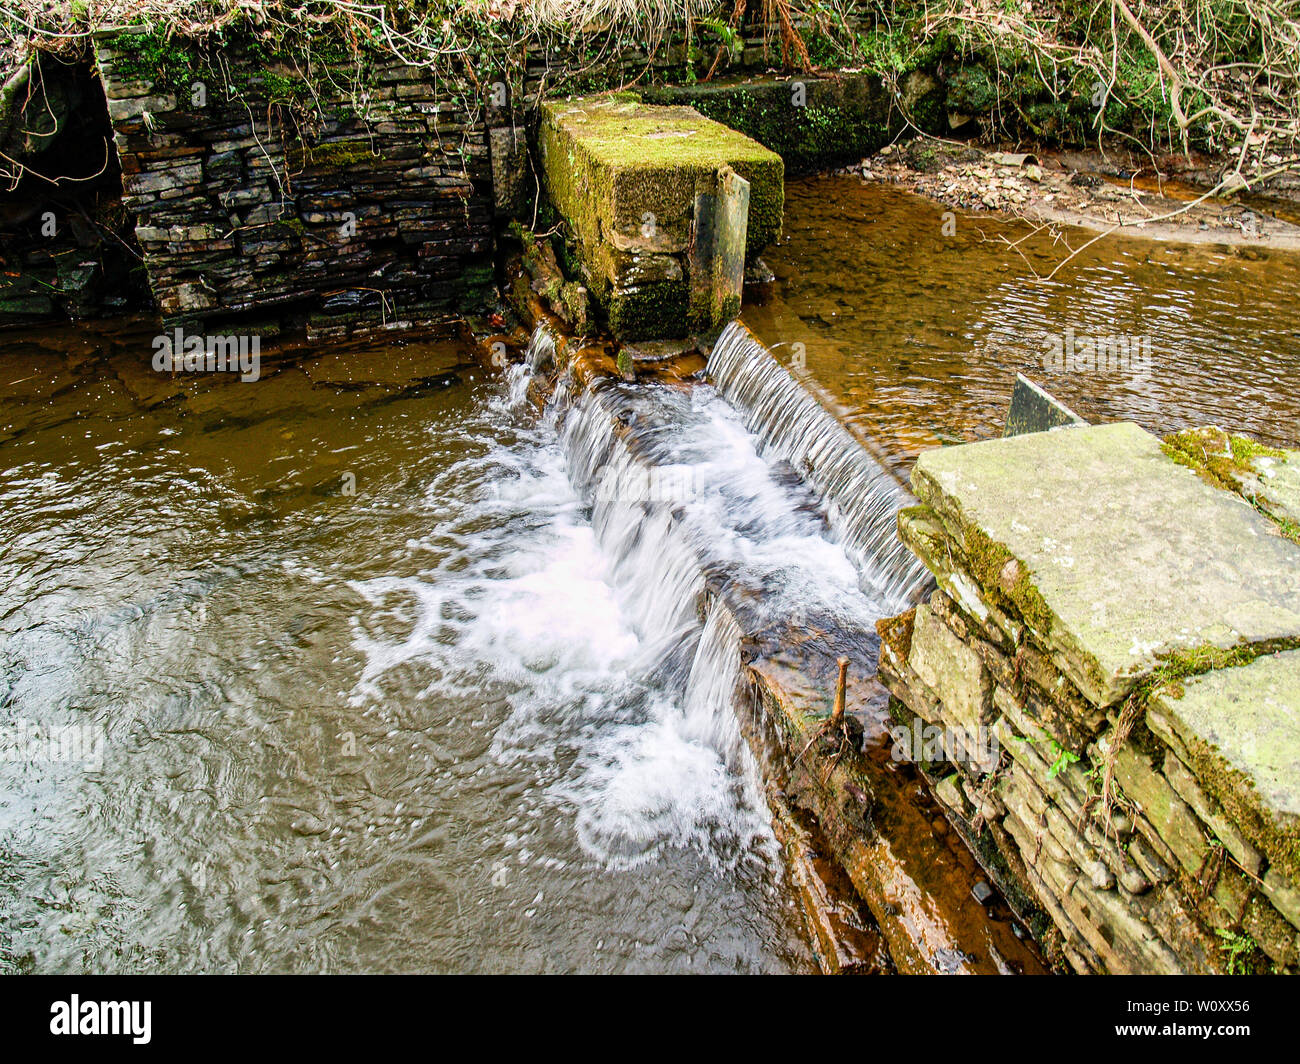 L'eau tombant sur un barrage sur la rivière lliw au Pays de Galles. Entre la partie supérieure et inférieure du réservoir lliw. Afon Lliw, près de Felindre, Swansea, Pays de Galles, Royaume-Uni. Banque D'Images